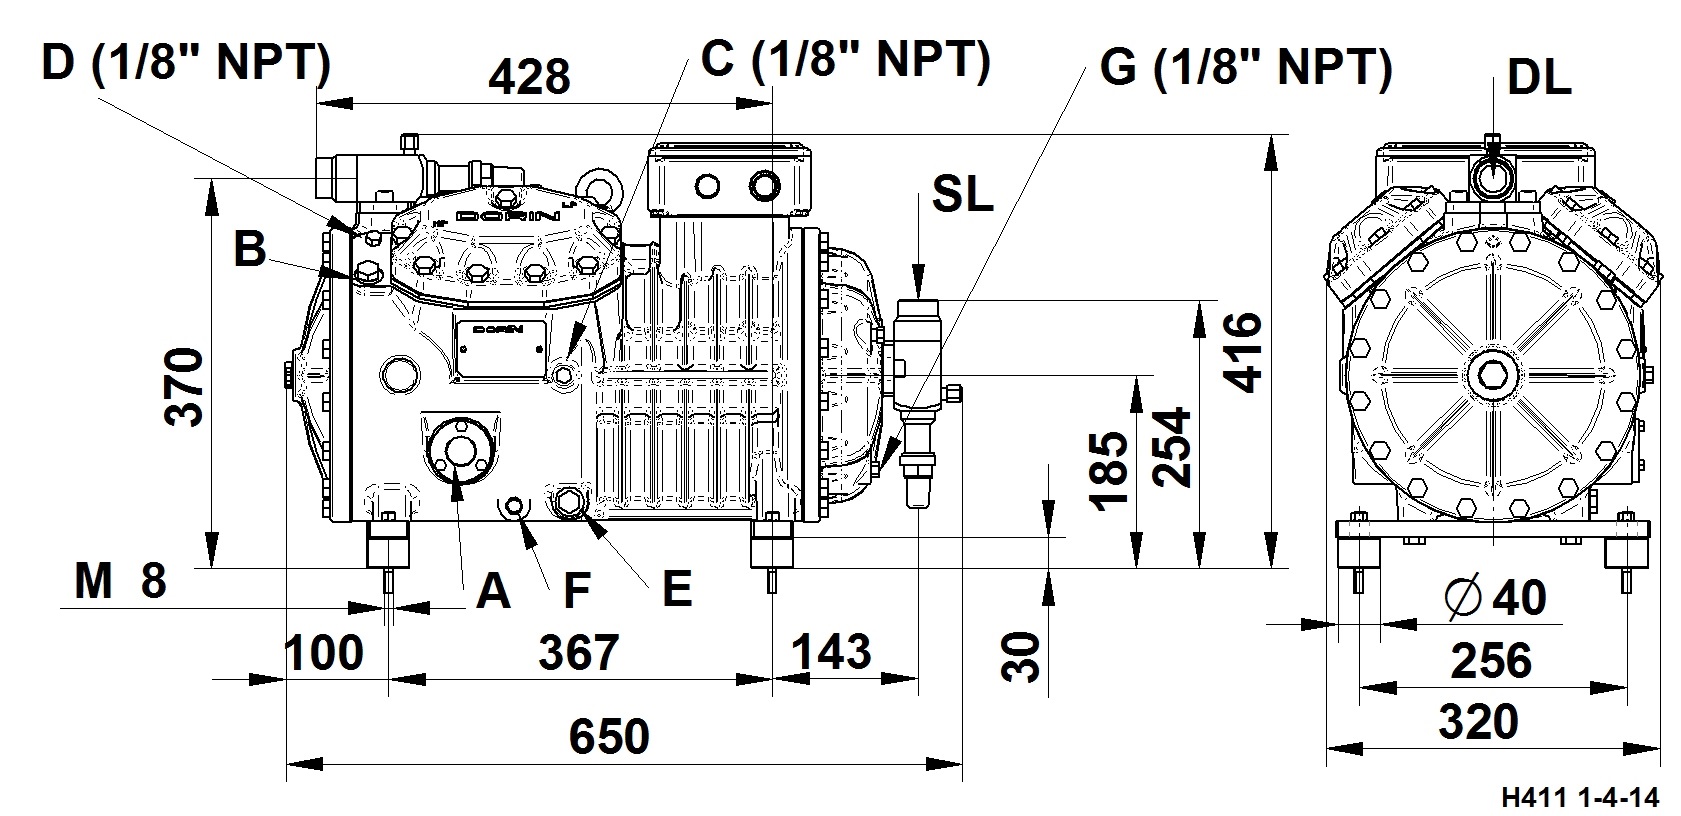 H1200EP - Compressori Semiermetici per R134a Serie HEP | DORIN